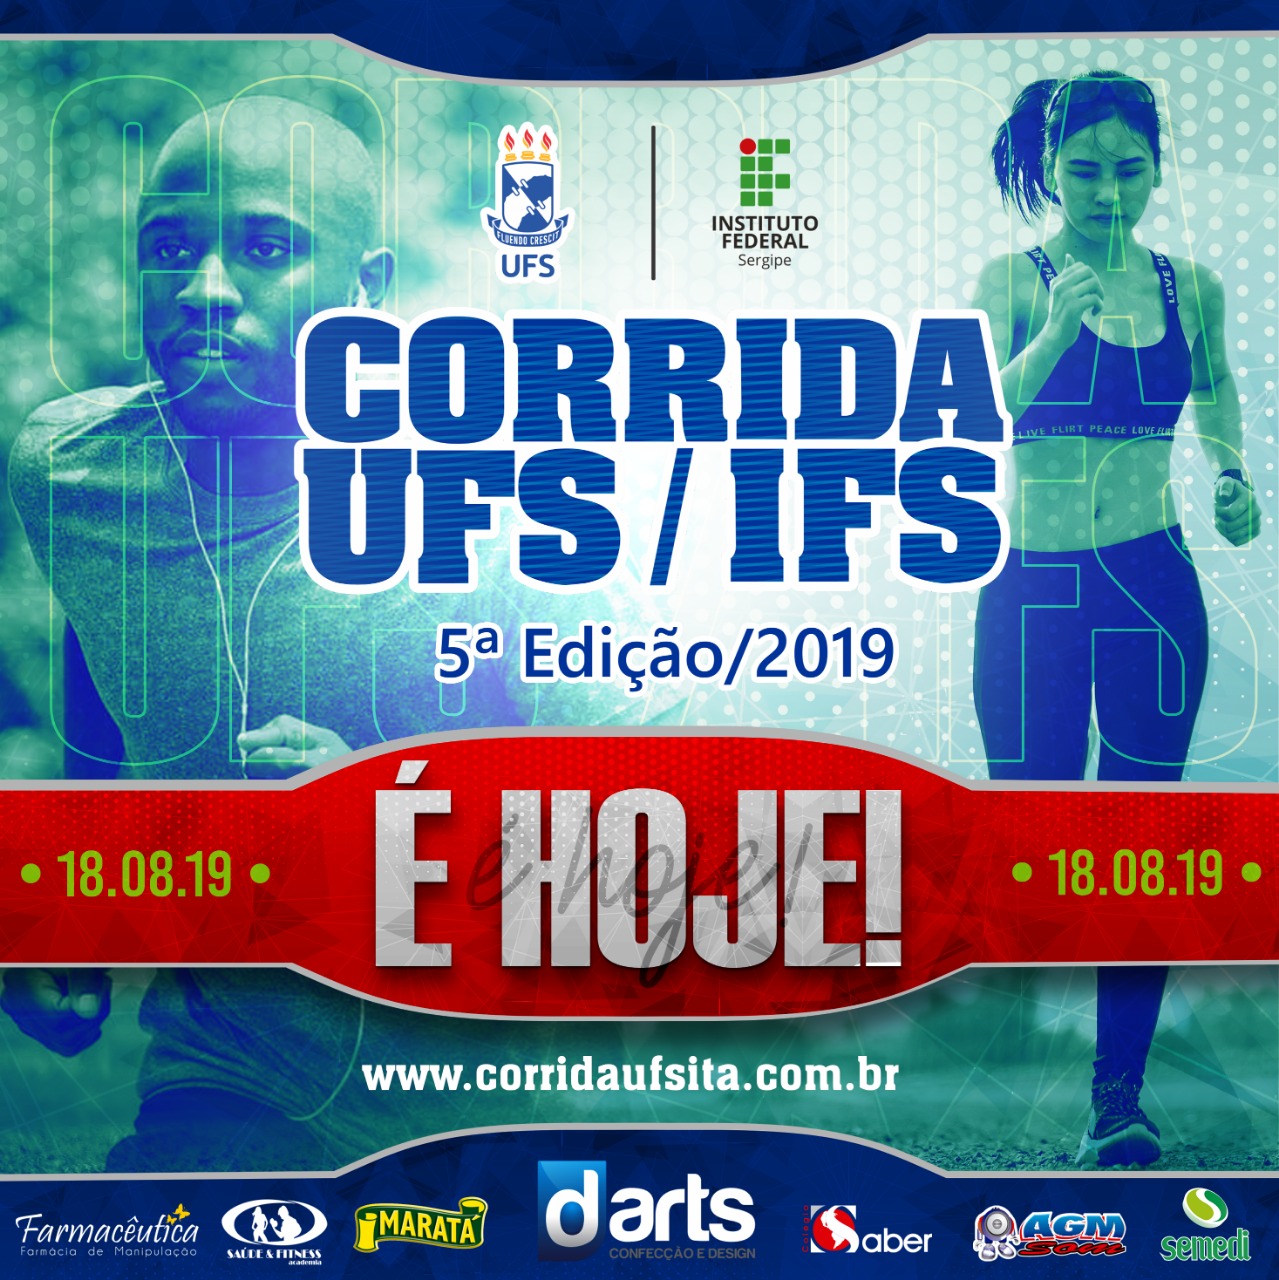 5ª corrida UFS/IFS